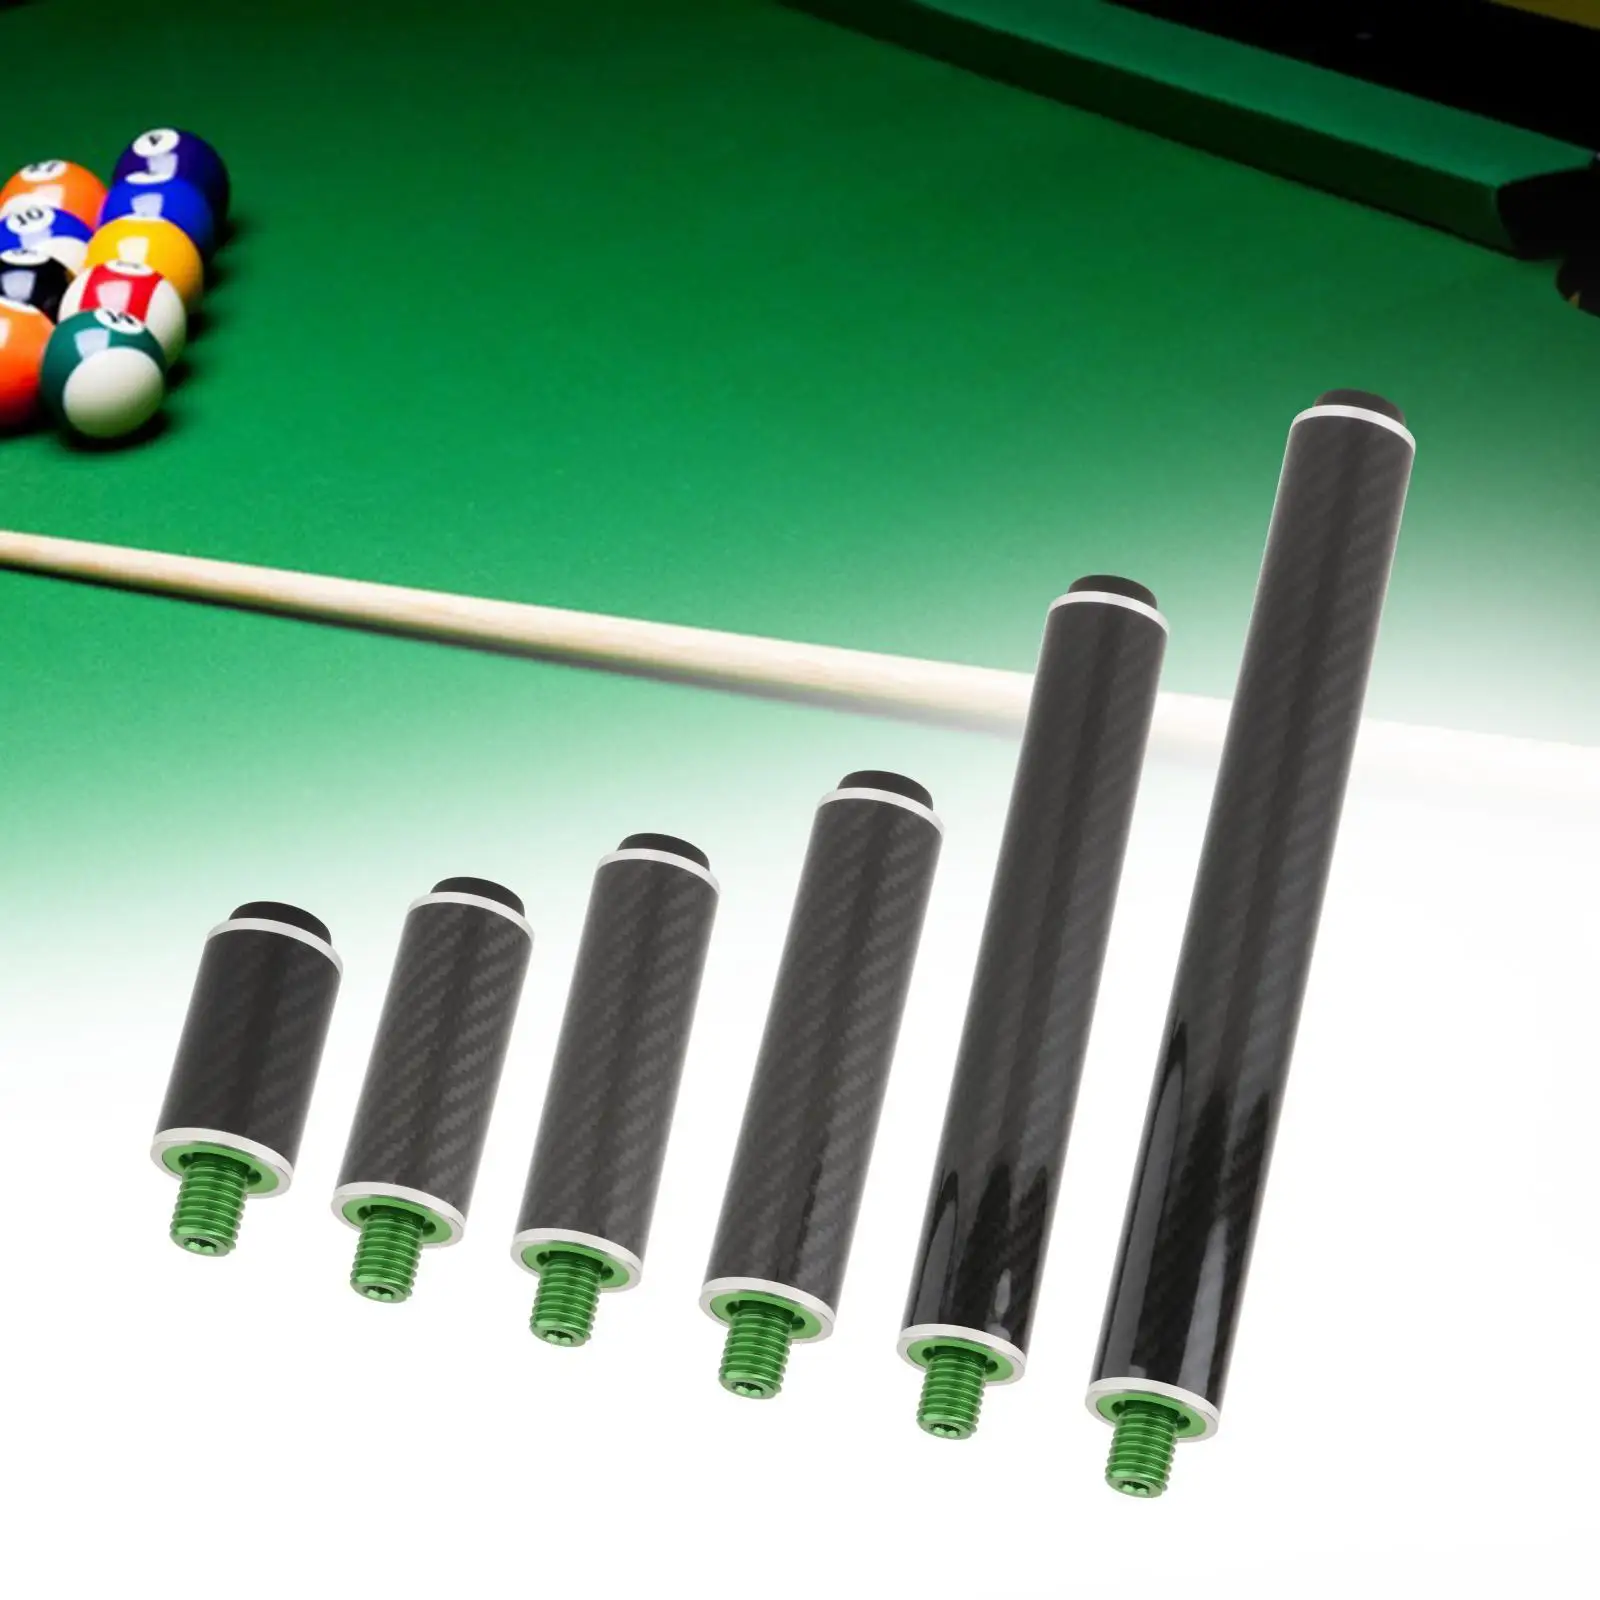 Billiards Pool Cue Extension Attachment Carbon Fiber Bottom Cover Dia 1.3in